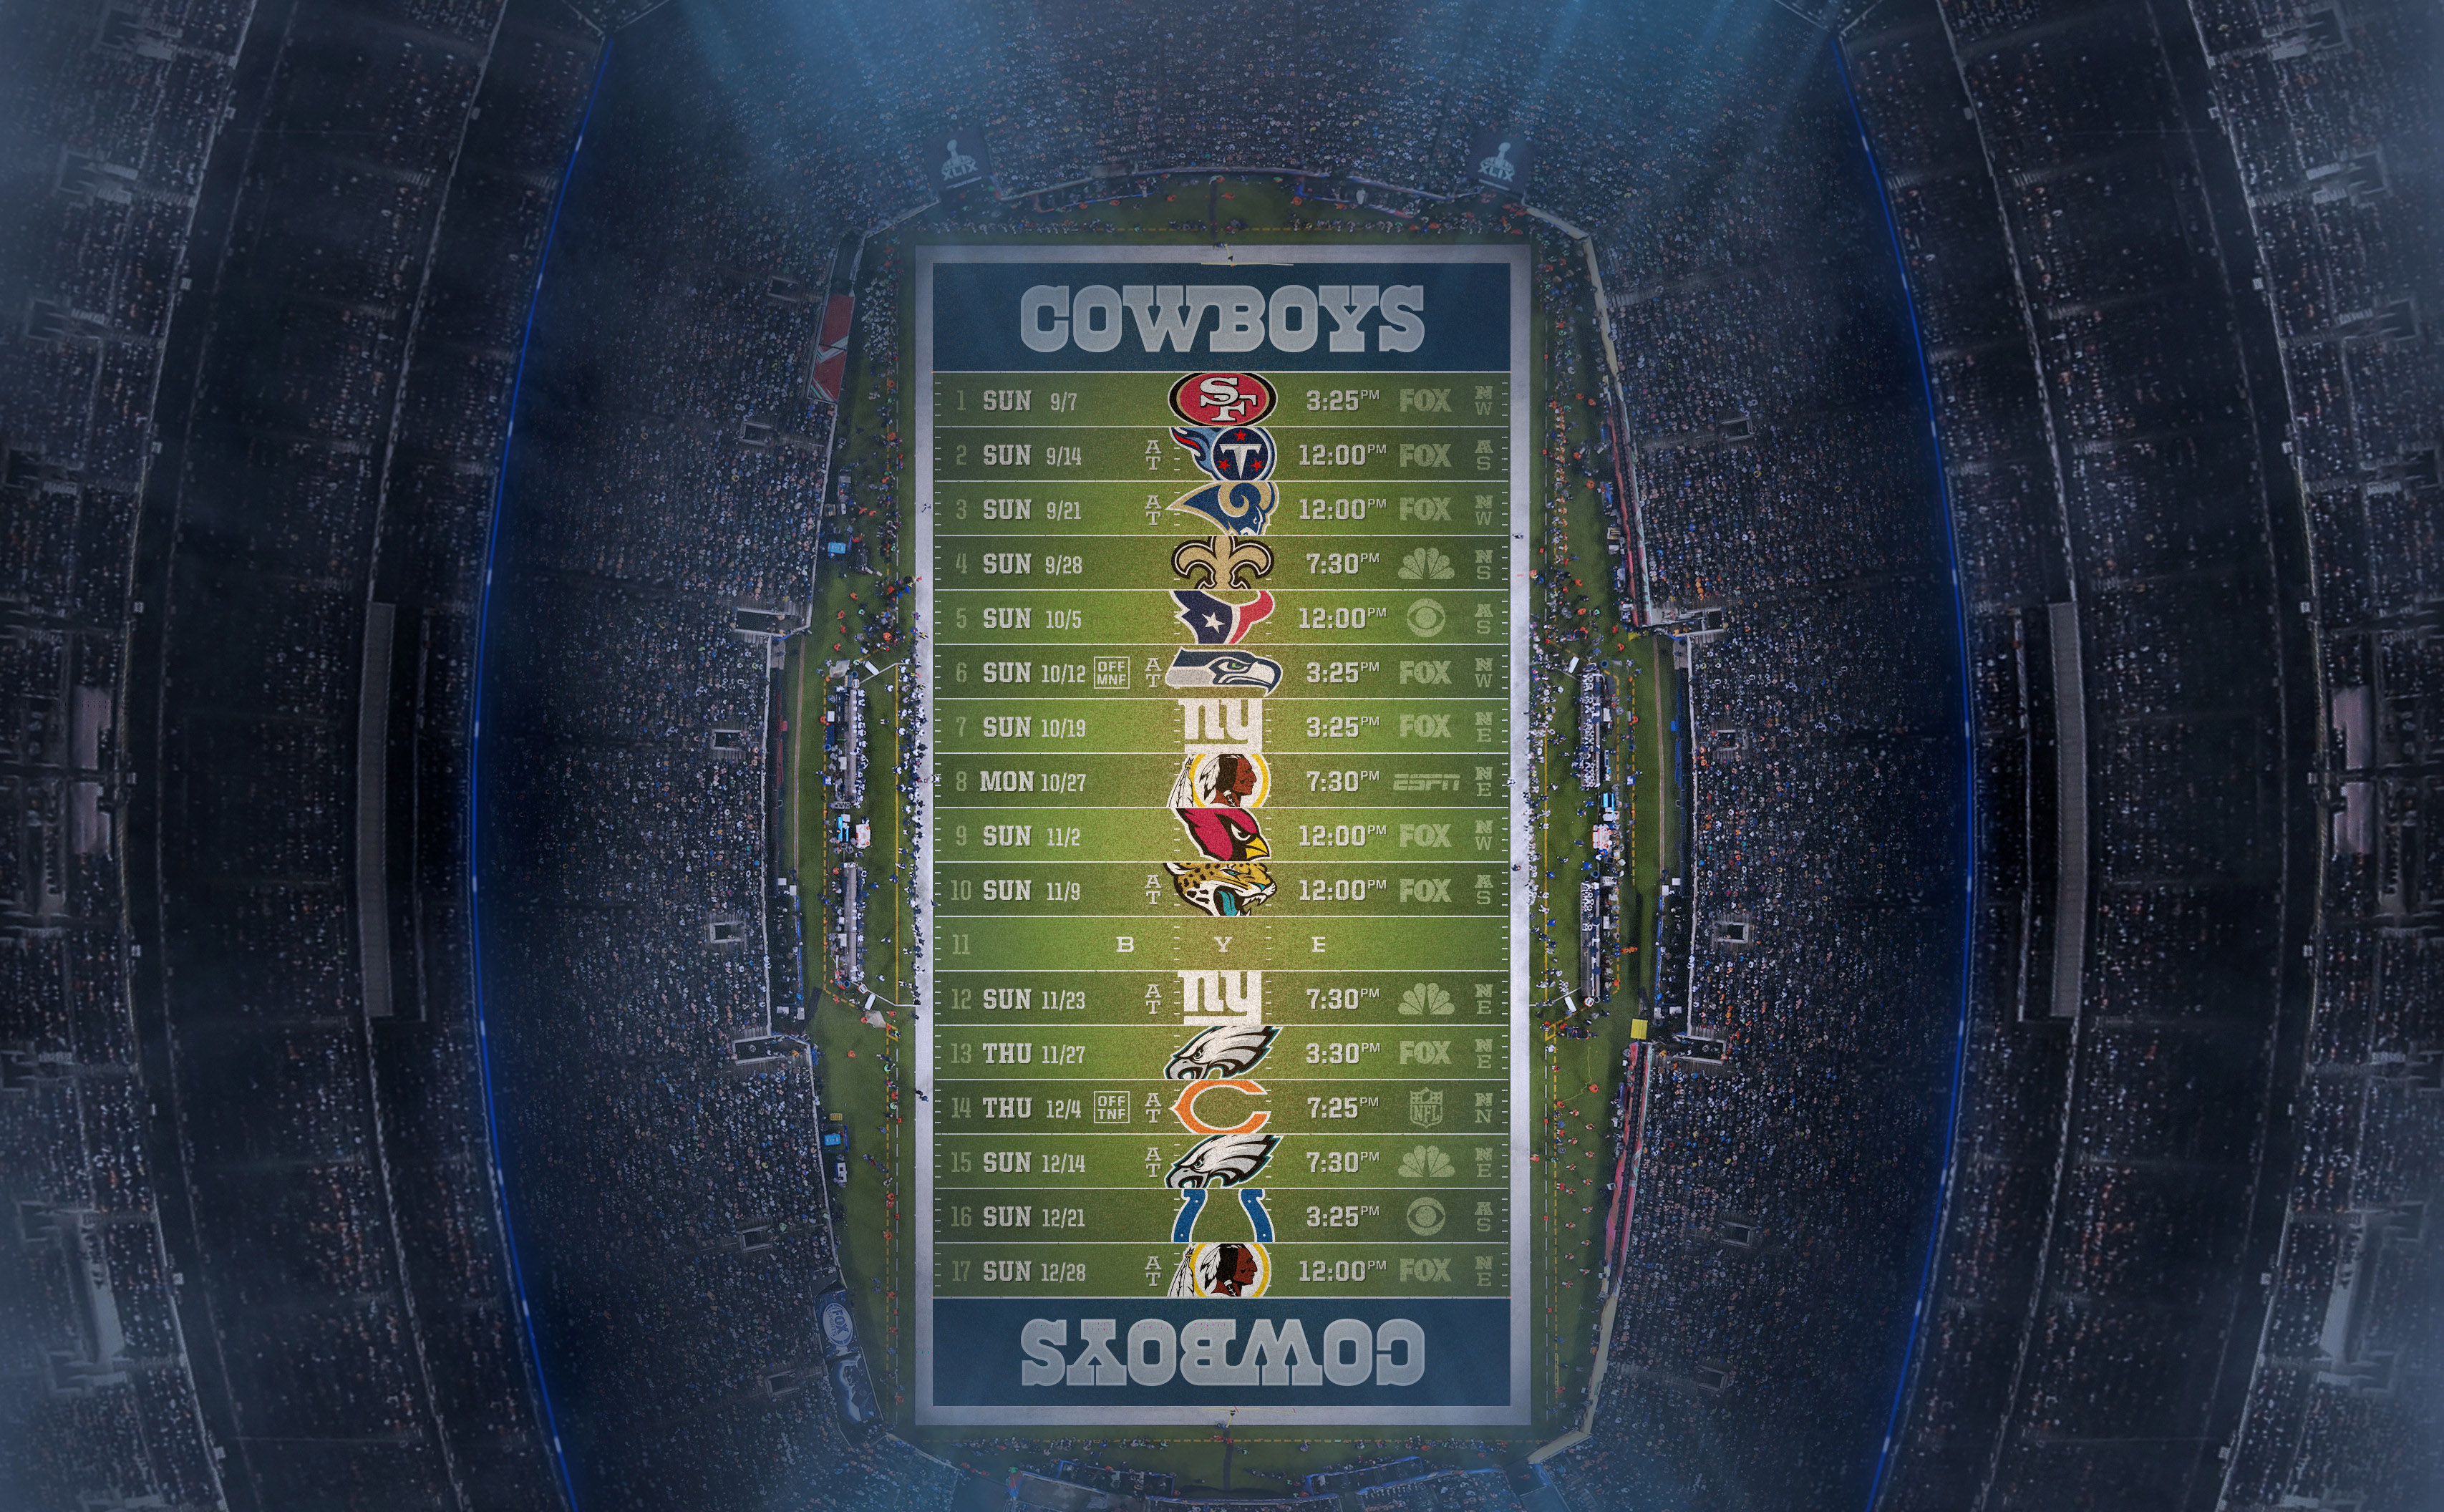 Dallas cowboys schedule wallpaper